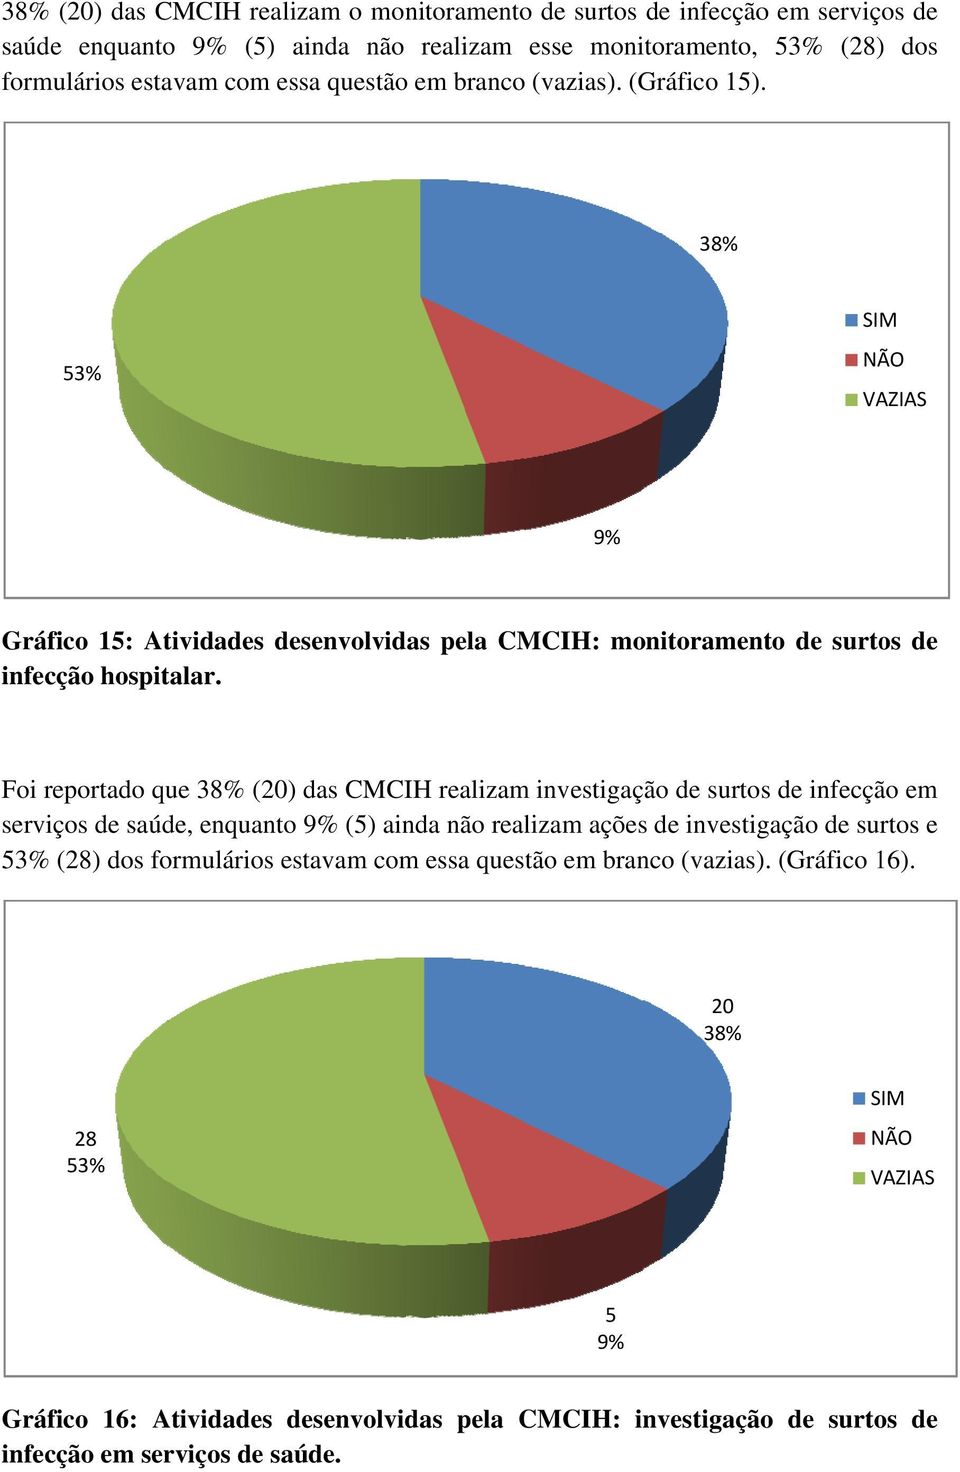 Foi reportado que 38% (20) das CMCIH realizam investigação de surtos de infecção em serviços de saúde, enquanto 9% (5) ainda não realizam ações de investigação de surtos e